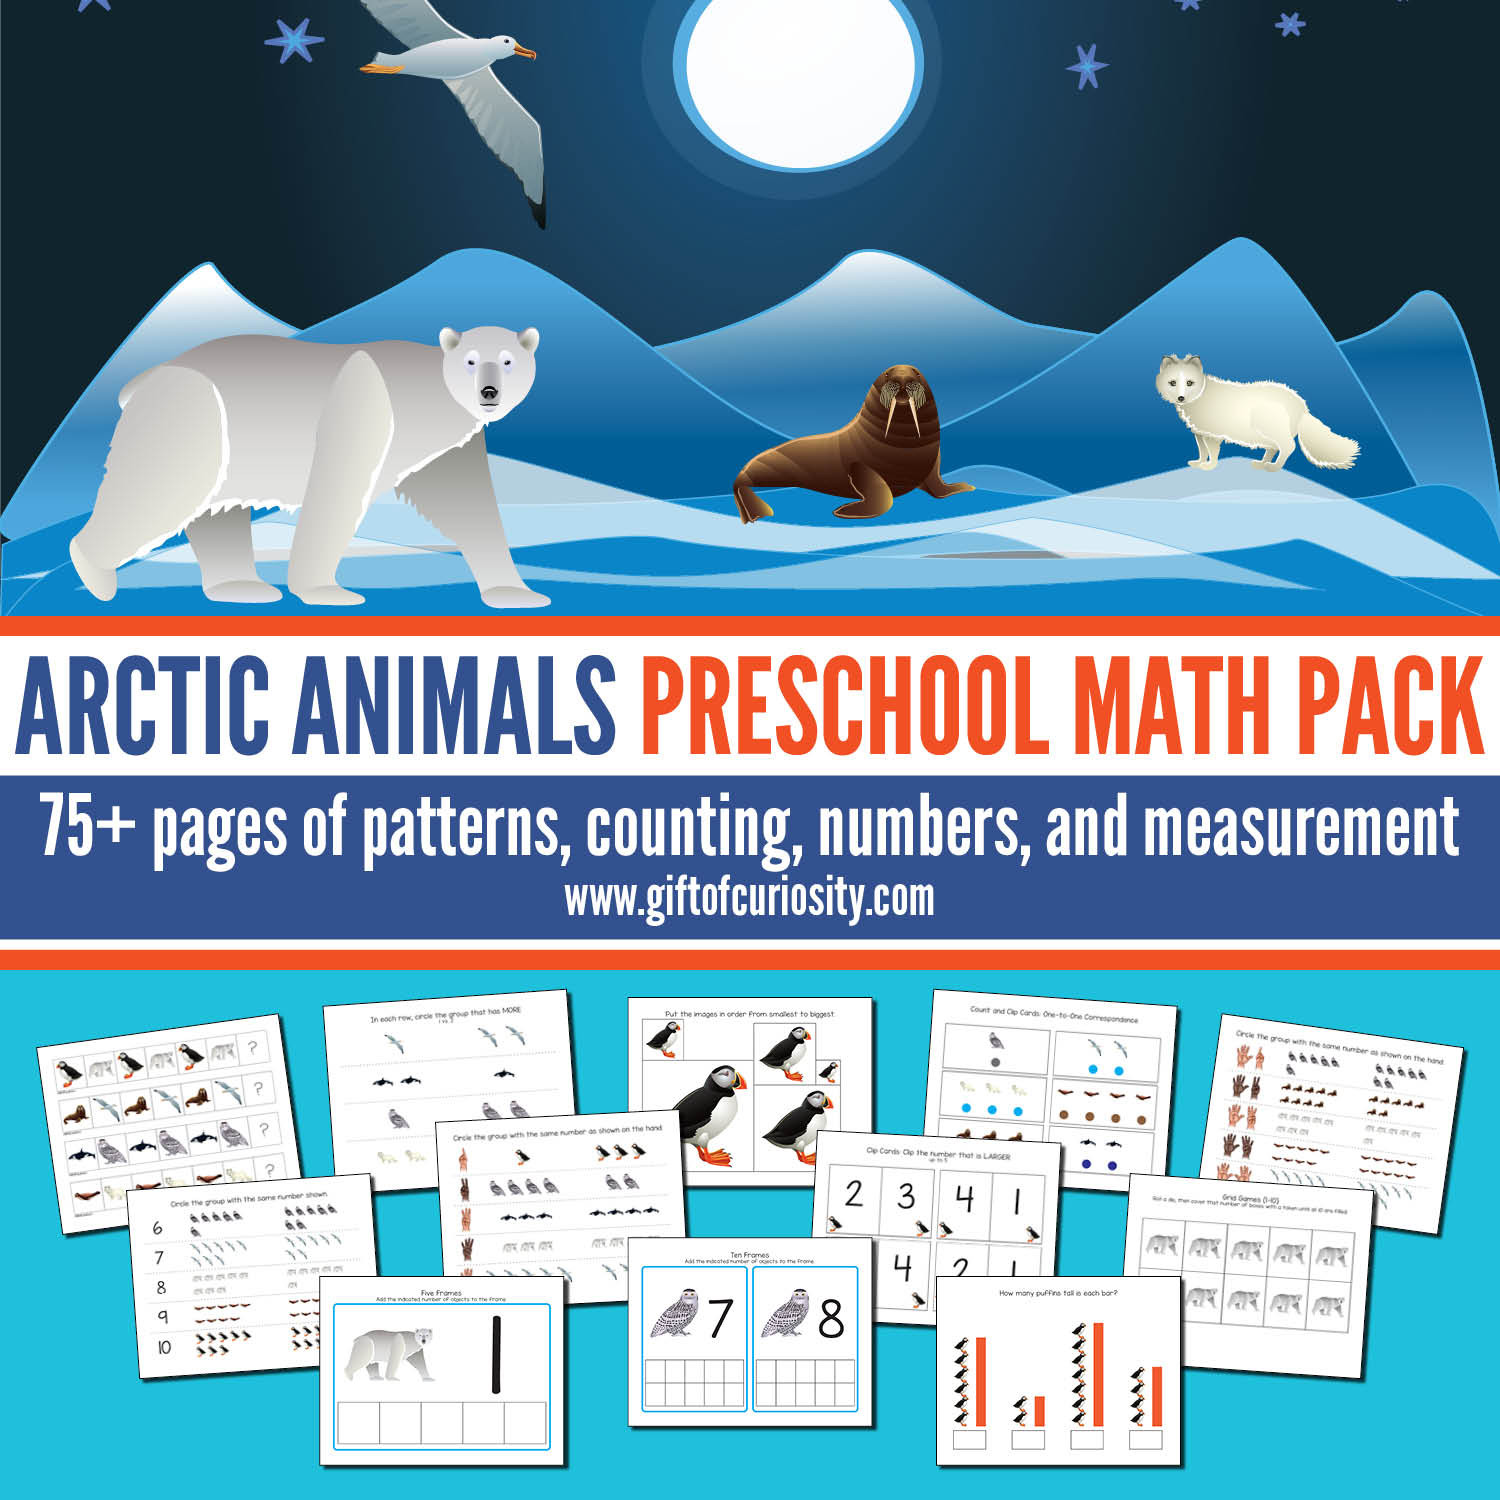 Arctic Animals Preschool Math Pack FB